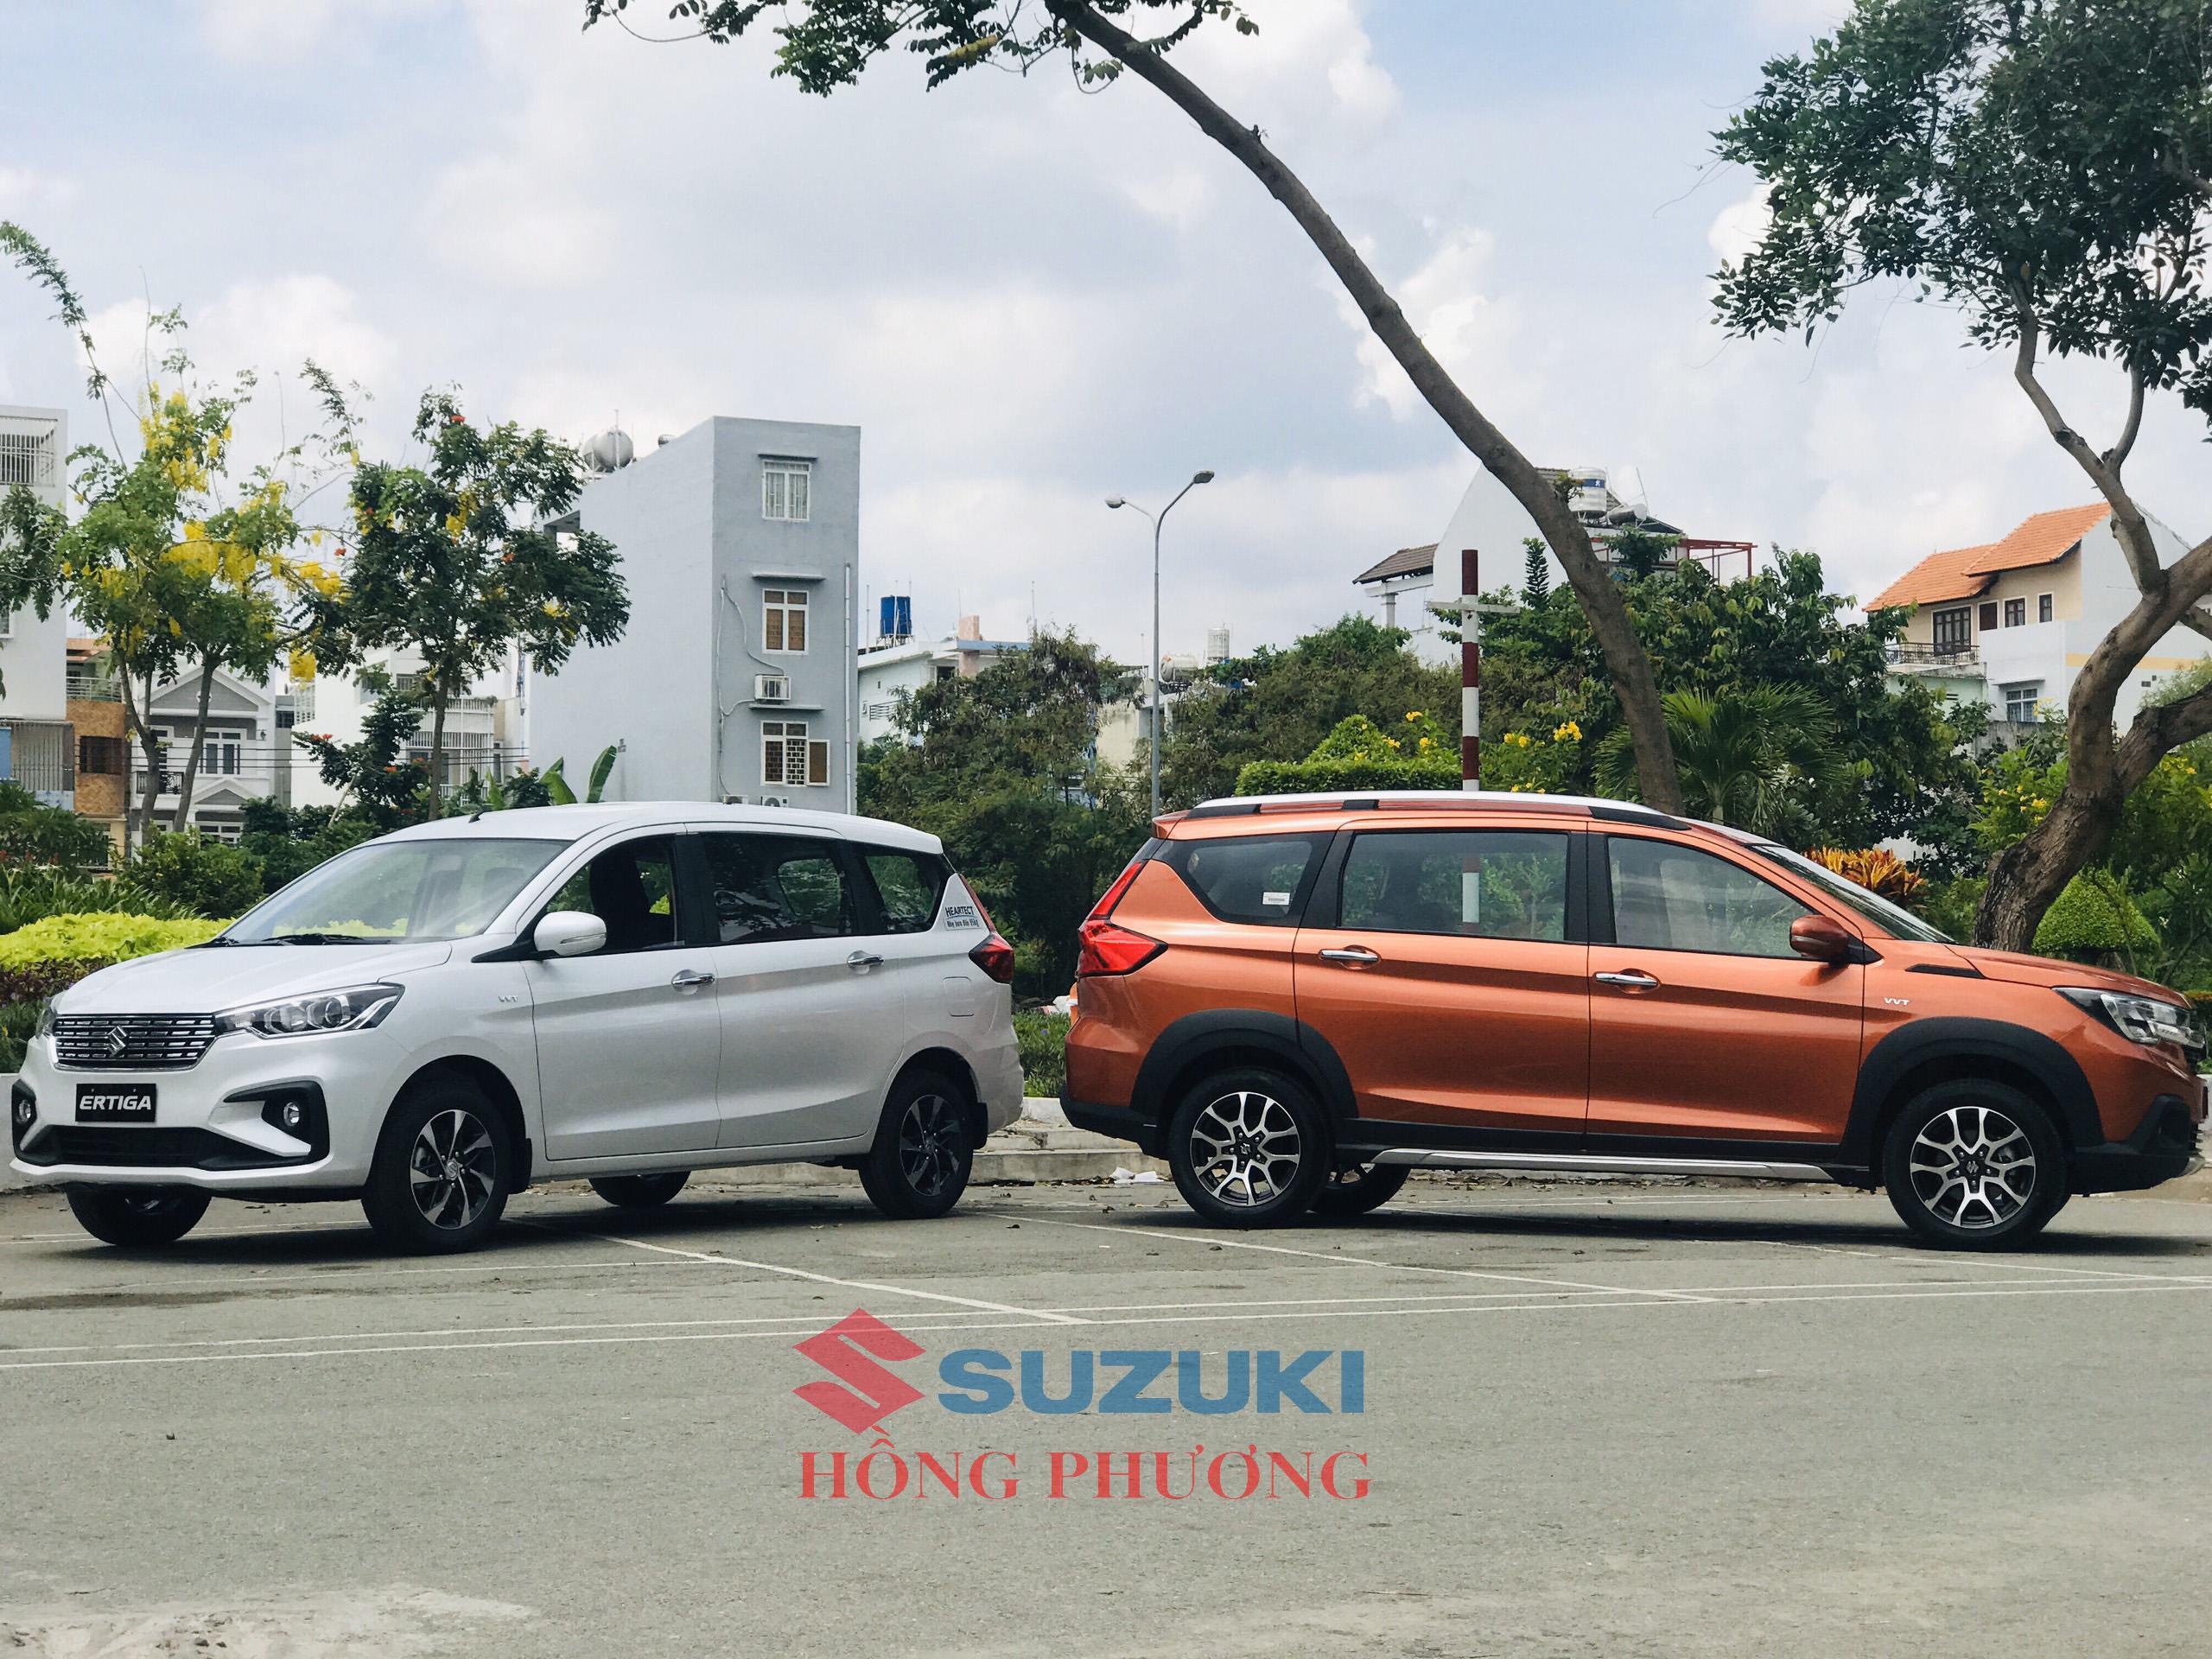 Có nên mua xe ô tô Suzuki không?